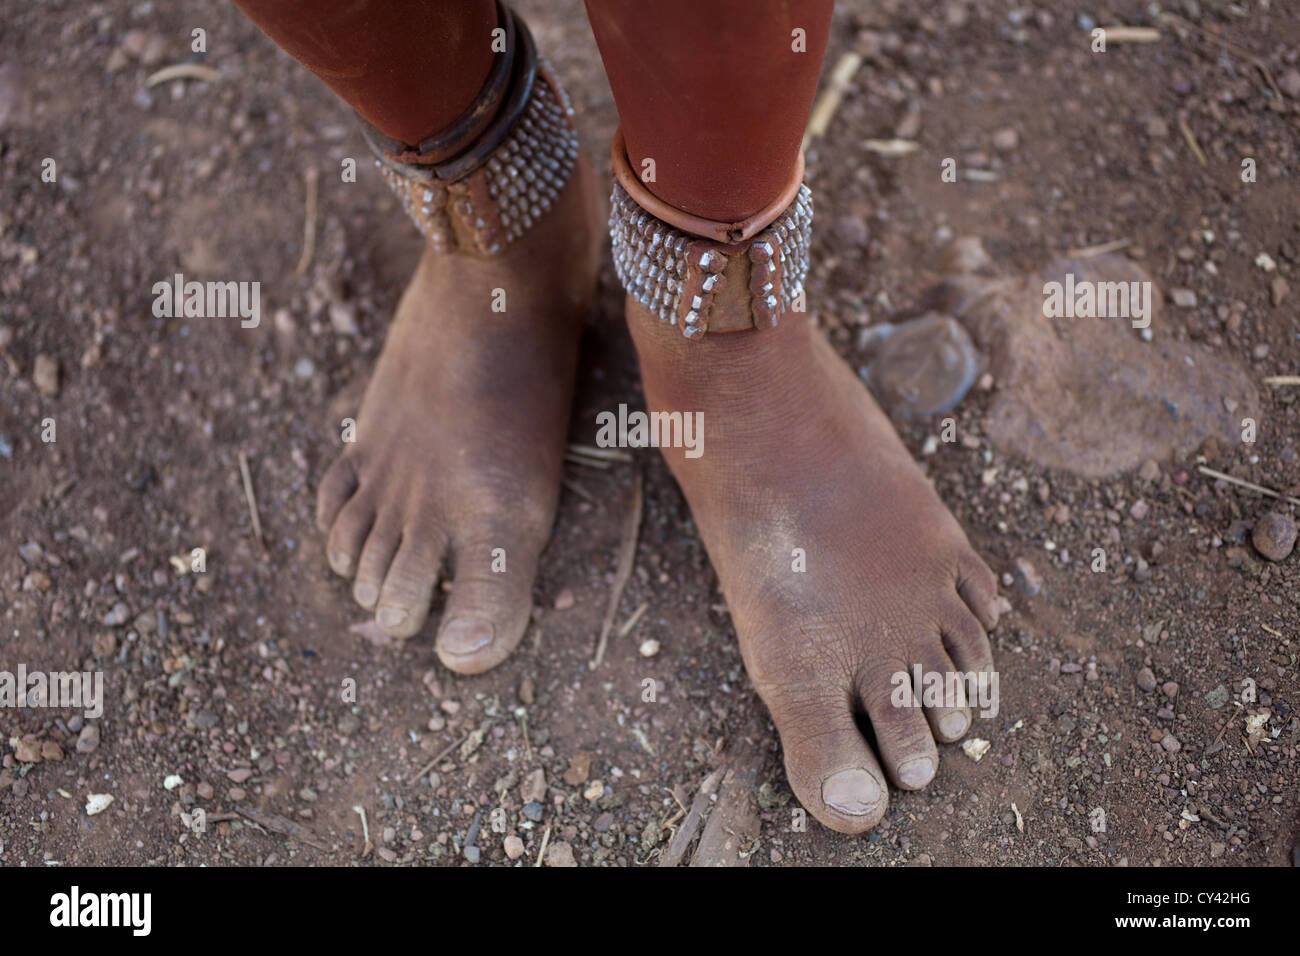 Himba tribe in Namibia. Stock Photo